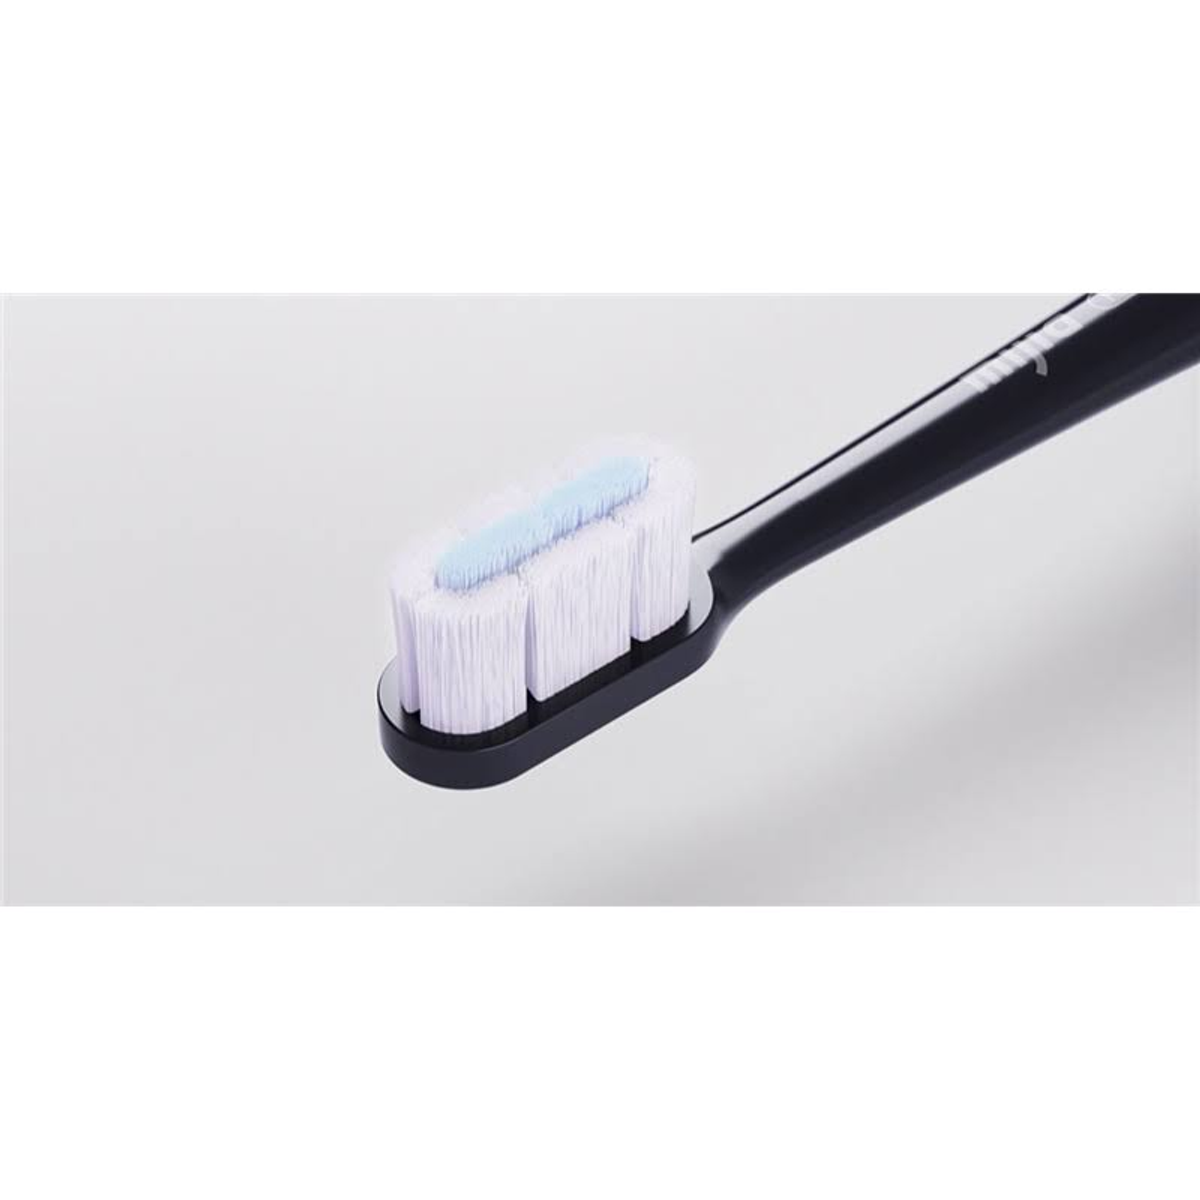 Electric XIAOMI T700 Zahnbürste schwarz Toothbrush Elektrische